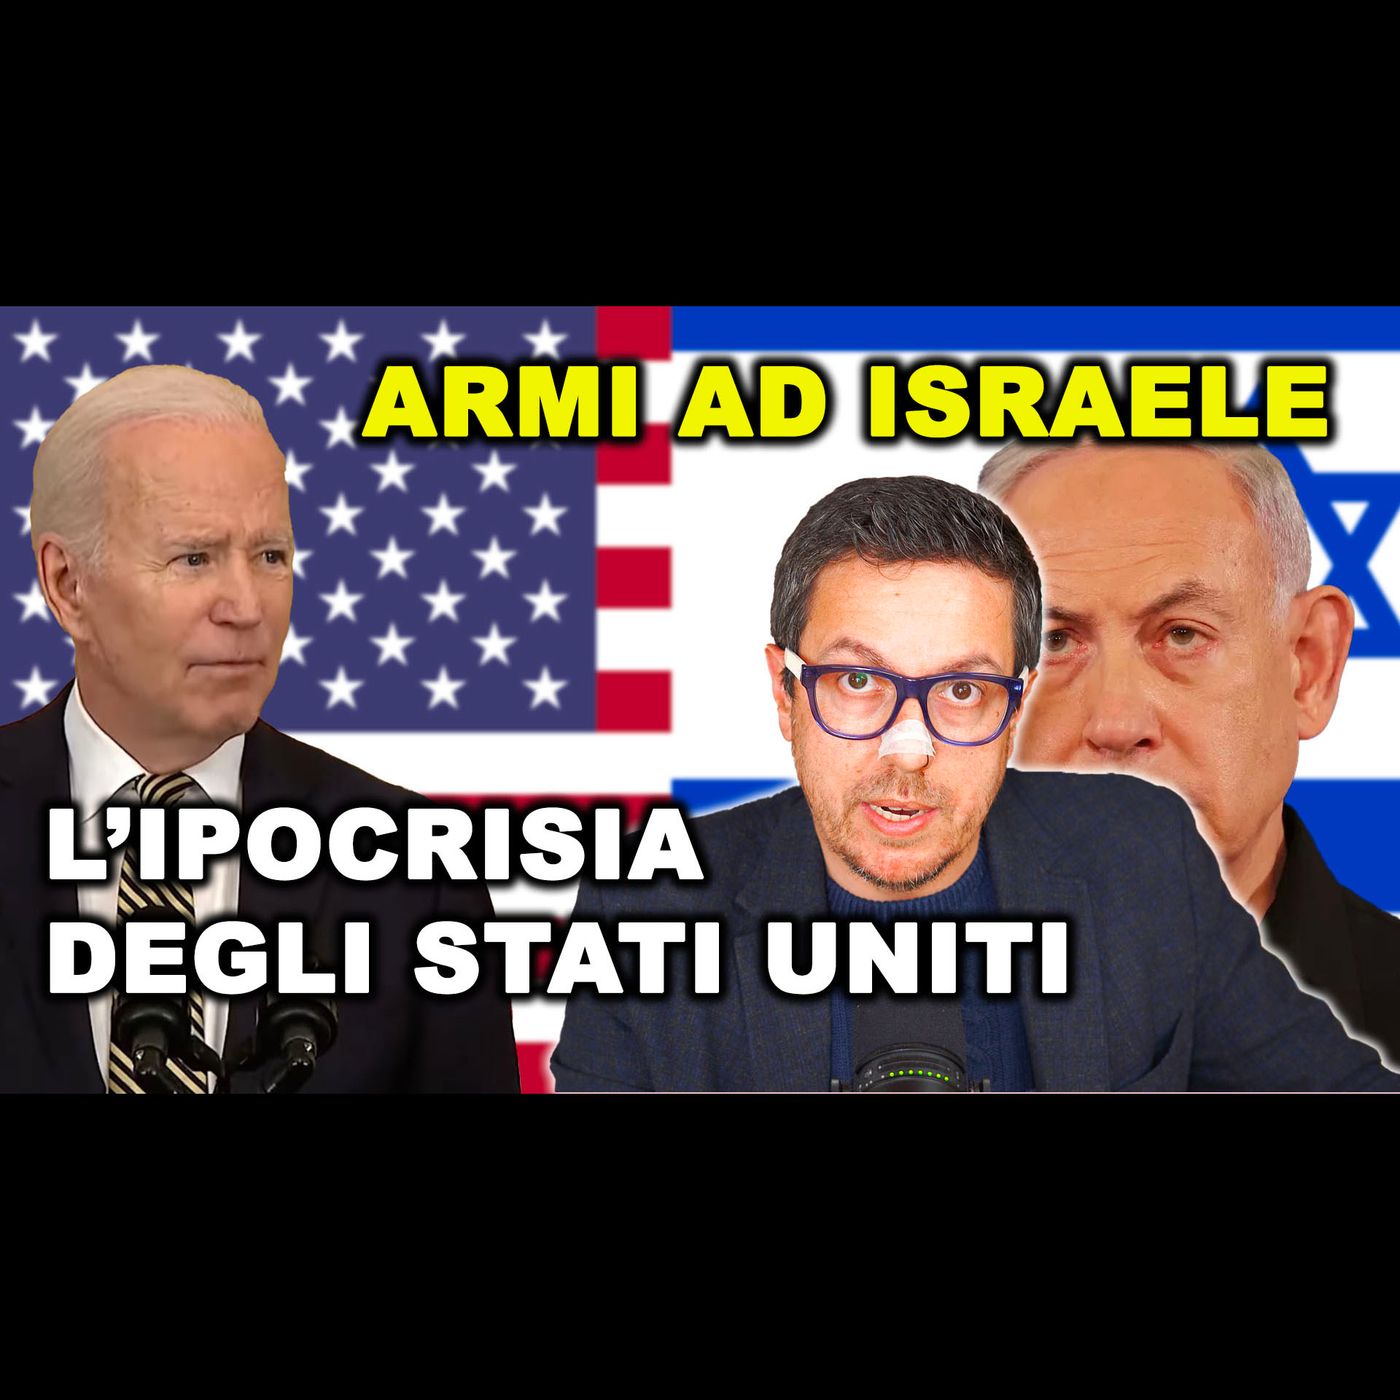 IMBARAZZANTE RAPPORTO U.S.A. SU ISRAELE e l’uso delle armi a GAZA violando il diritto internazionale